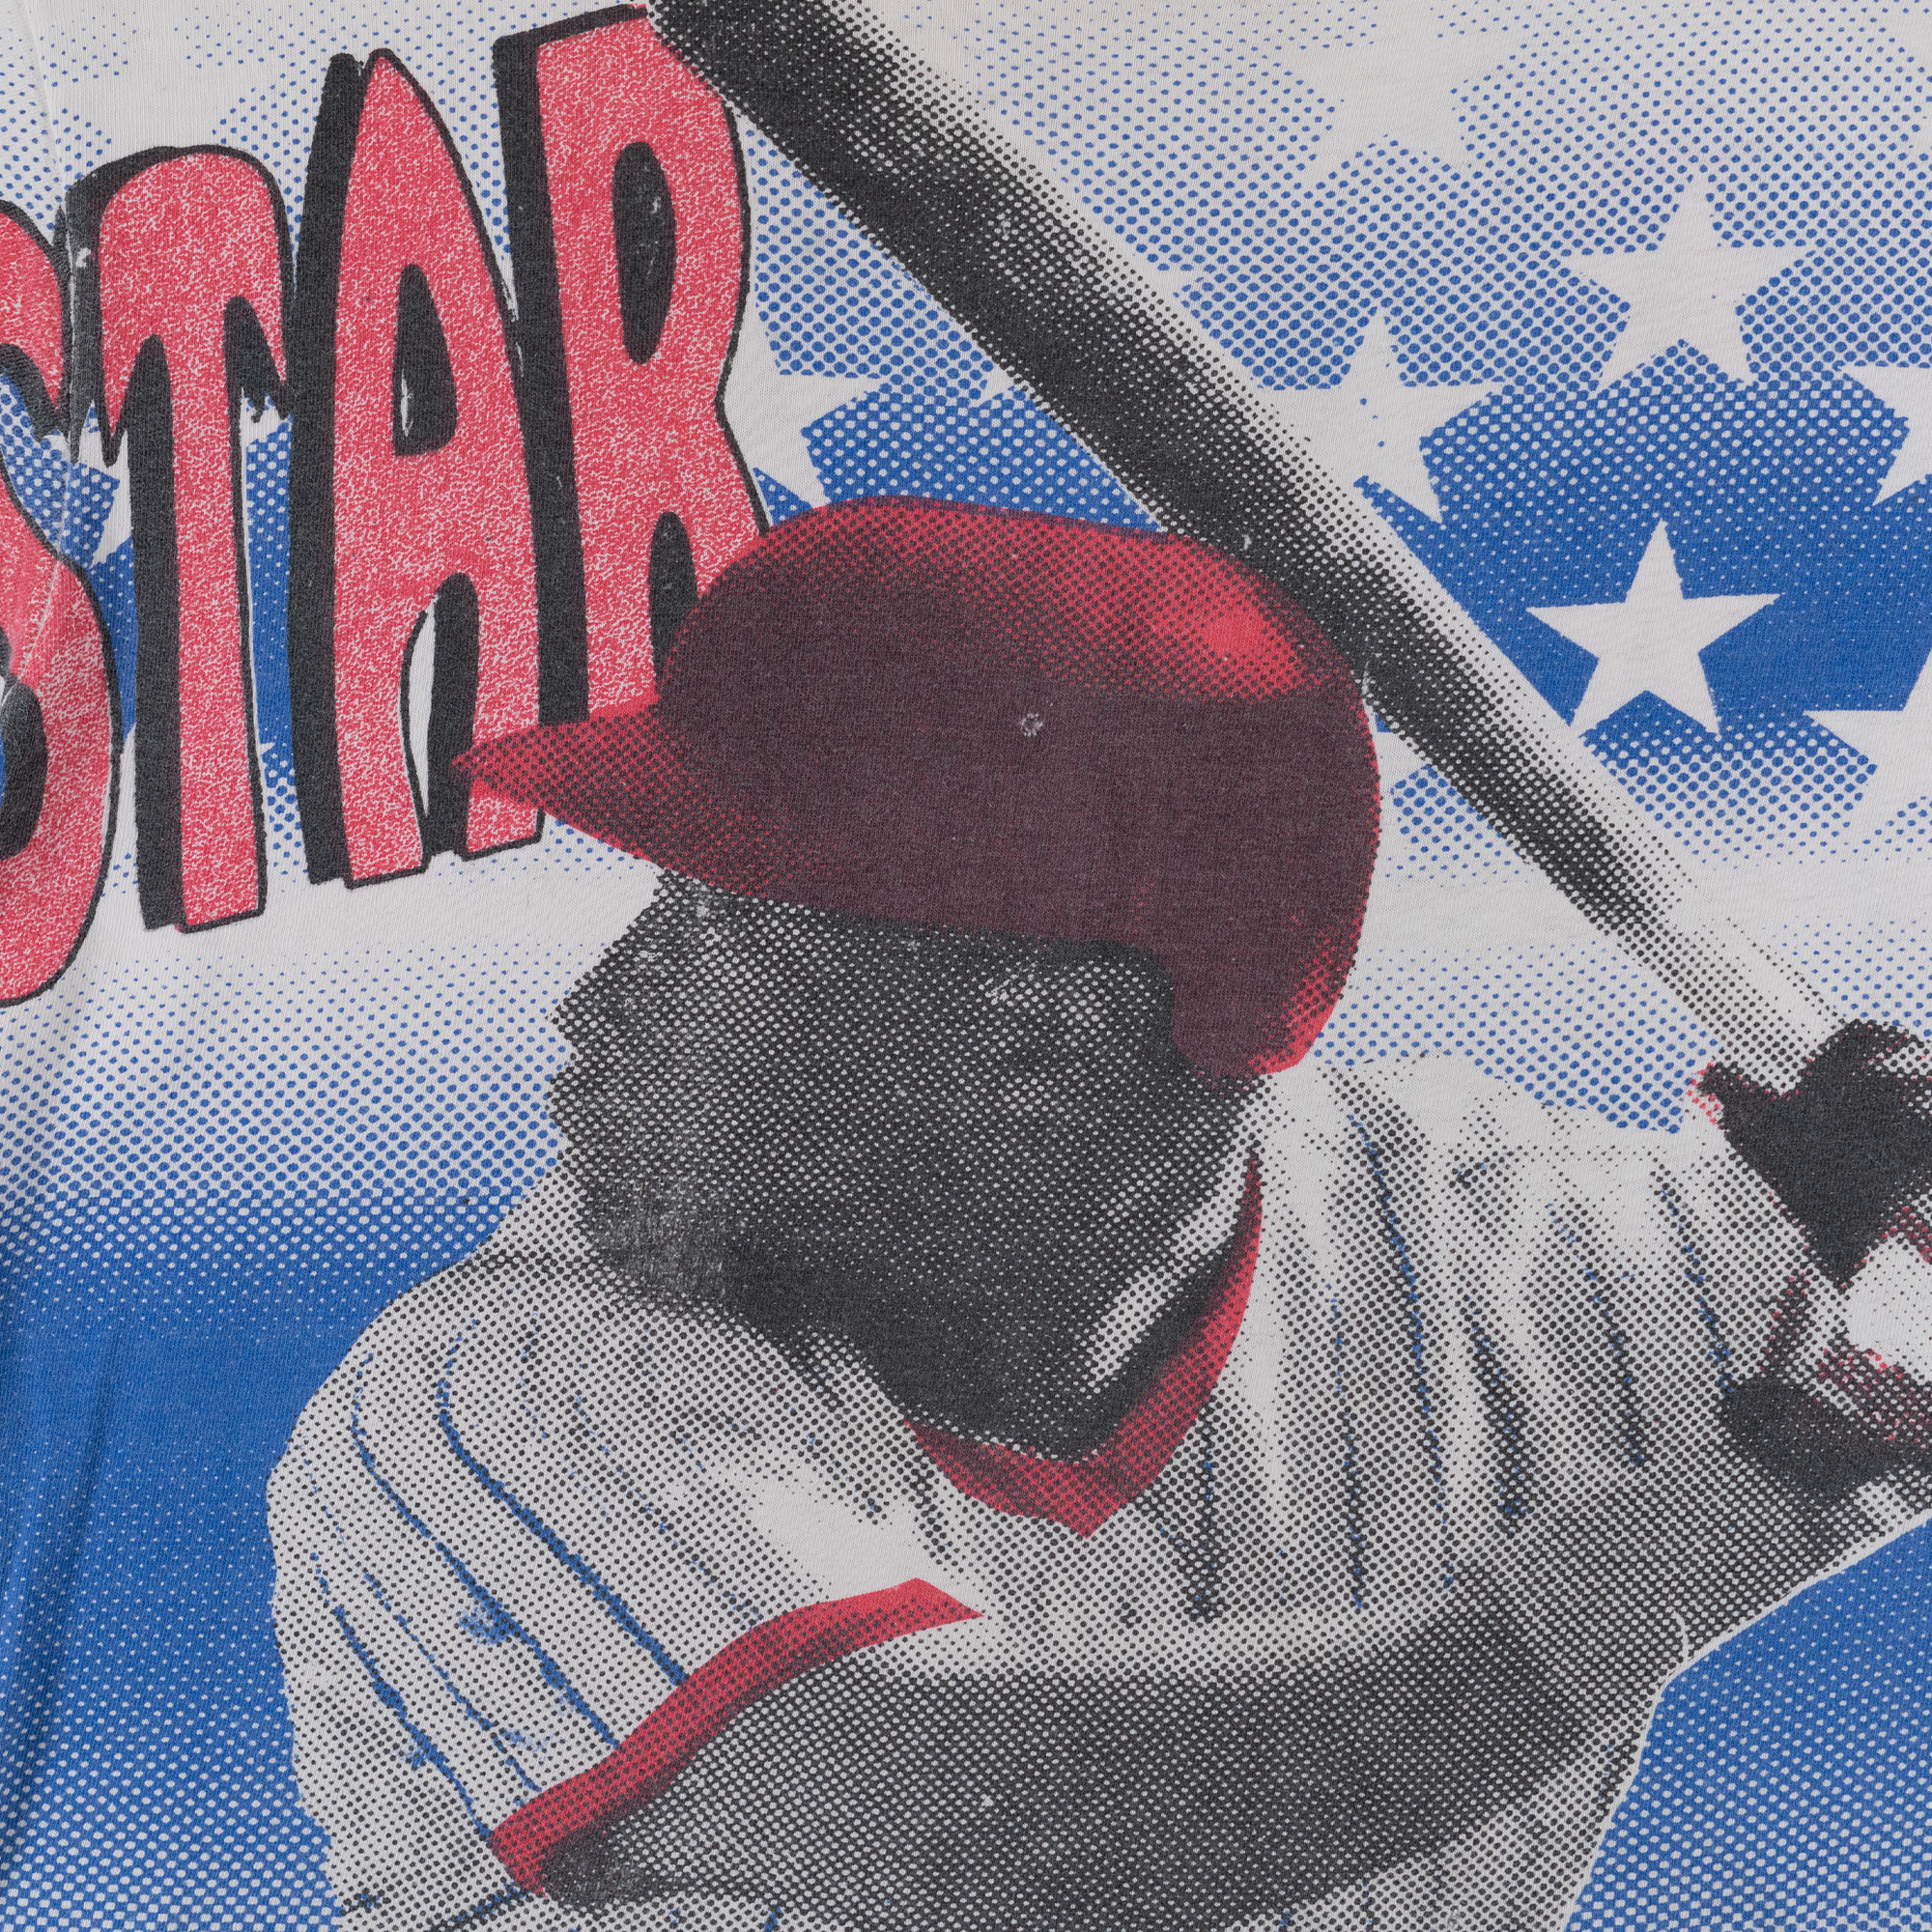 All Star Baseball Fever All Over Print Tee White-PLUS